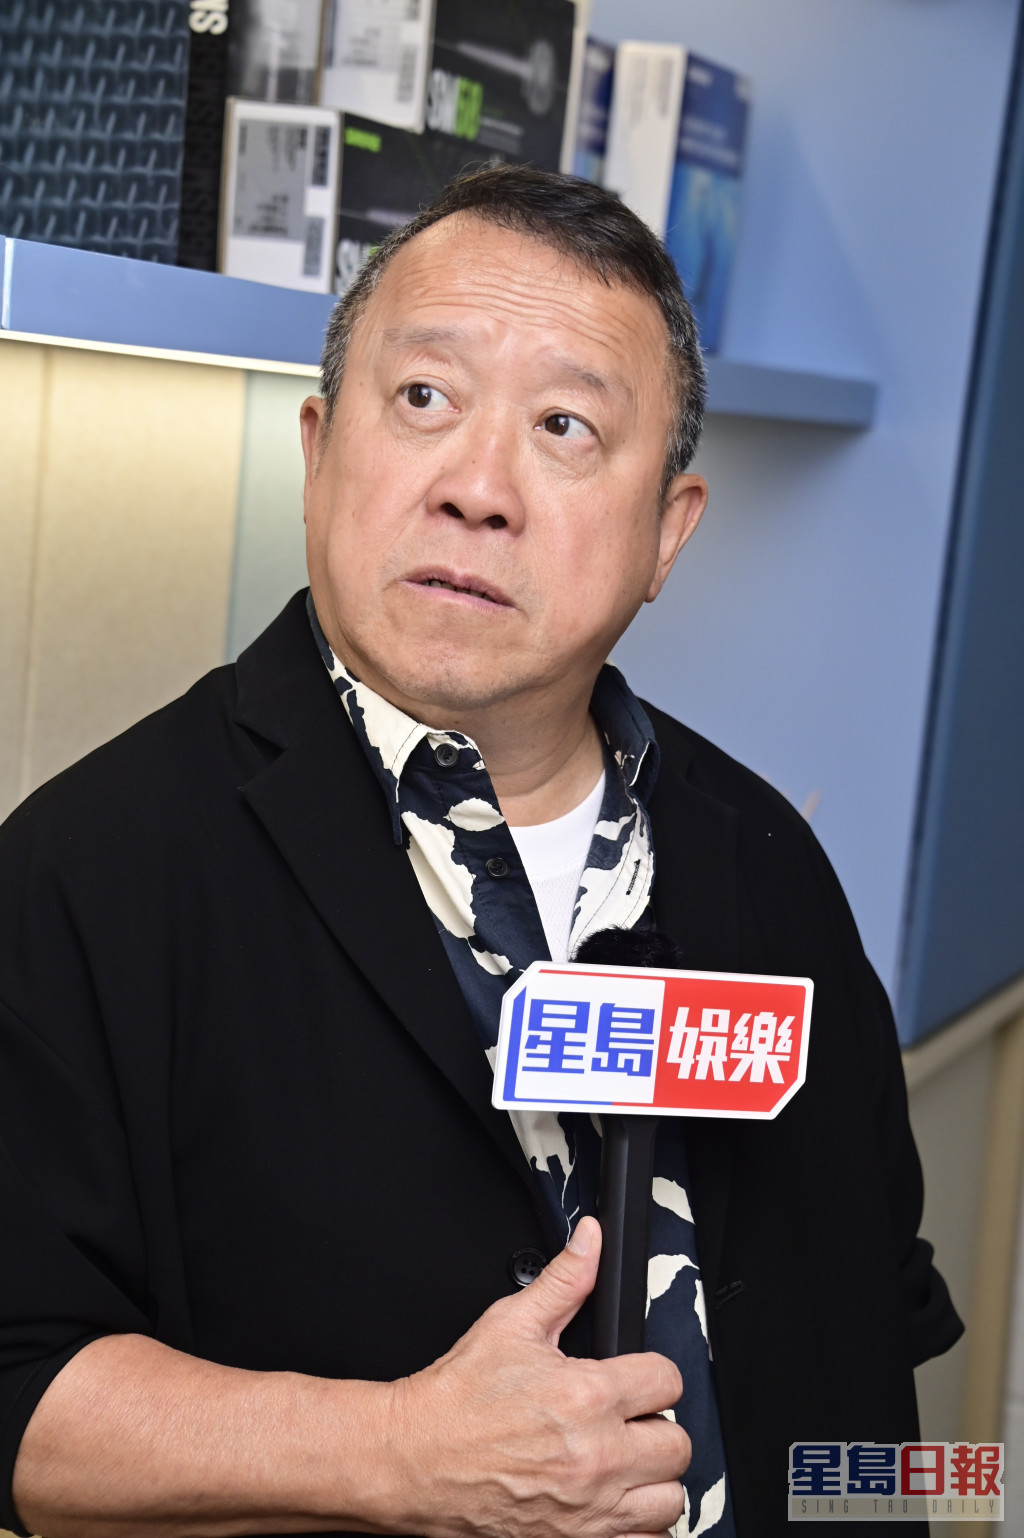 提到TVB旧将转投有线电视，曾志伟就指有工作，电视圈就会有多些事发生，有良性竞争才有进步。